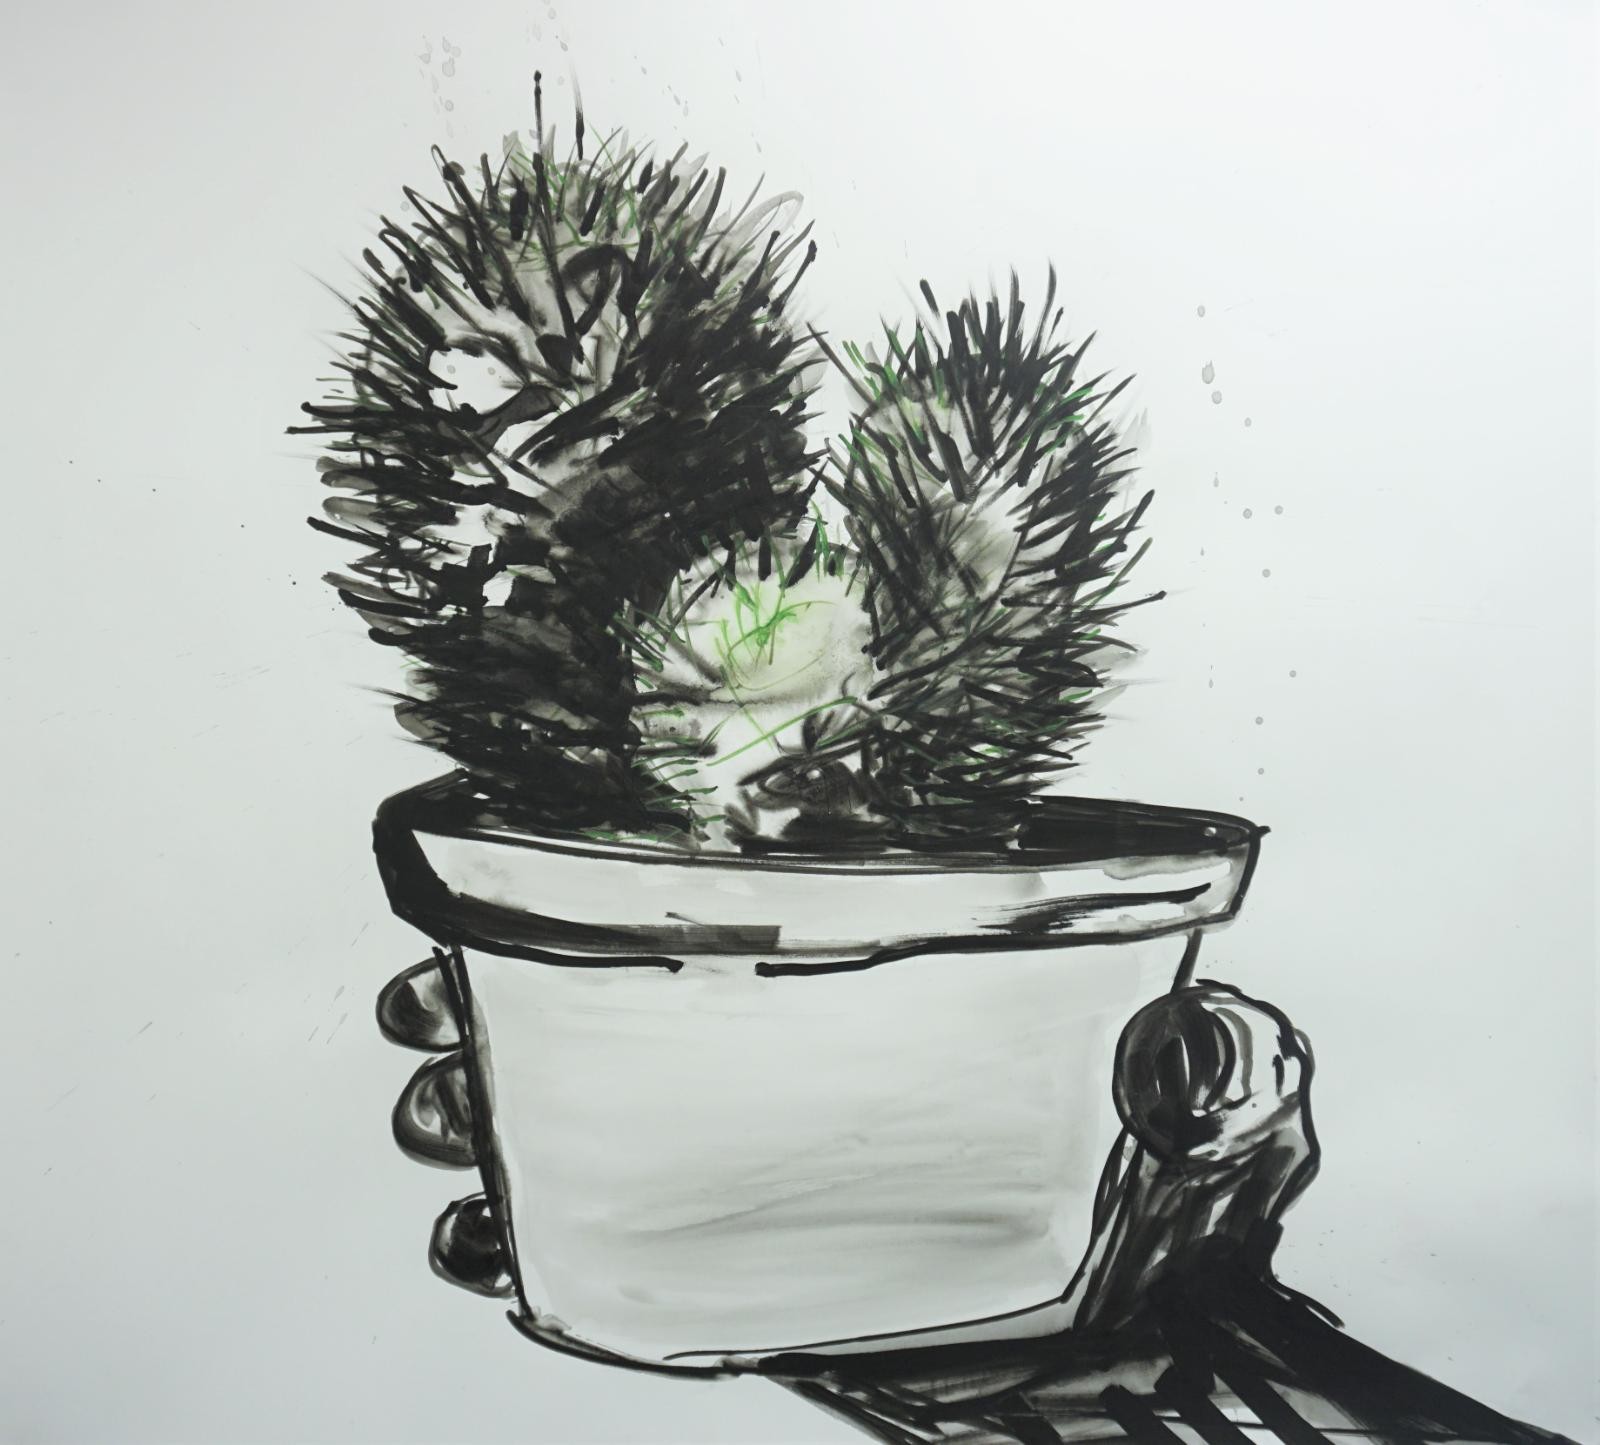 Daniel Wagenblast, kaktus 1, 2018, Zeichnung, 115 x 126 cm, Preis auf Anfrage, Galerie Cyprian Brenner